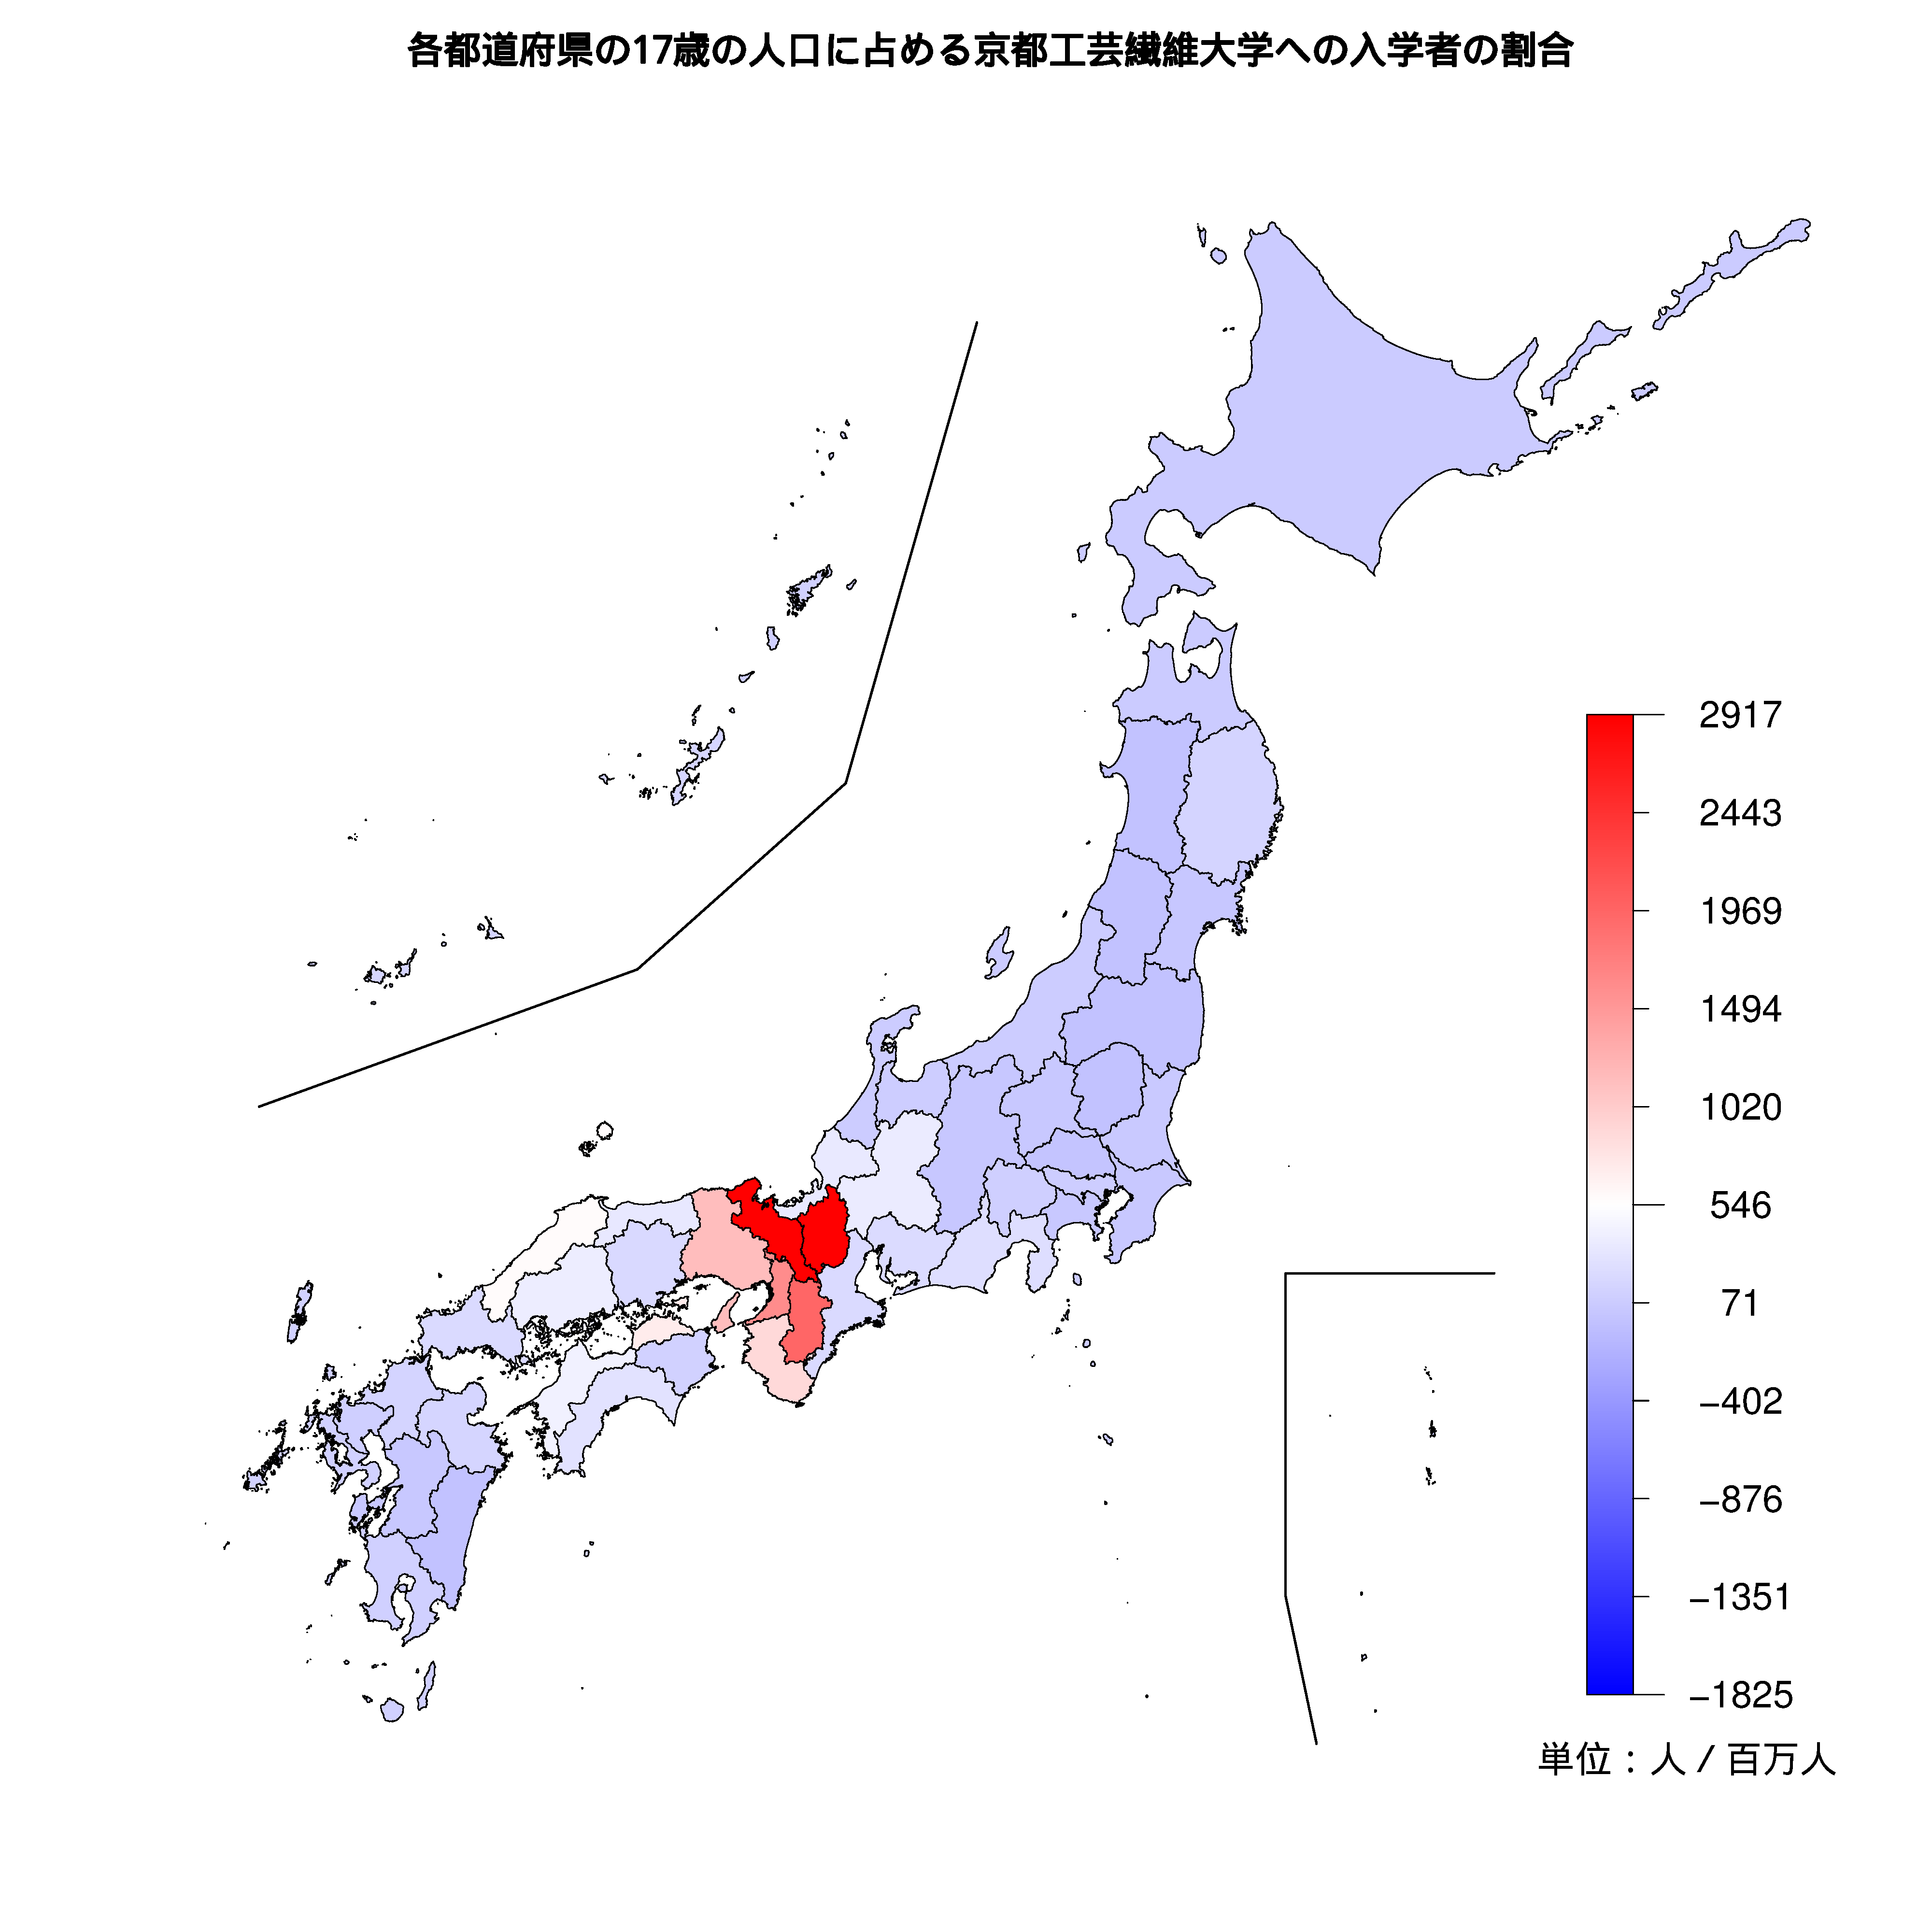 京都工芸繊維大学への入学者が多い都道府県の色分け地図